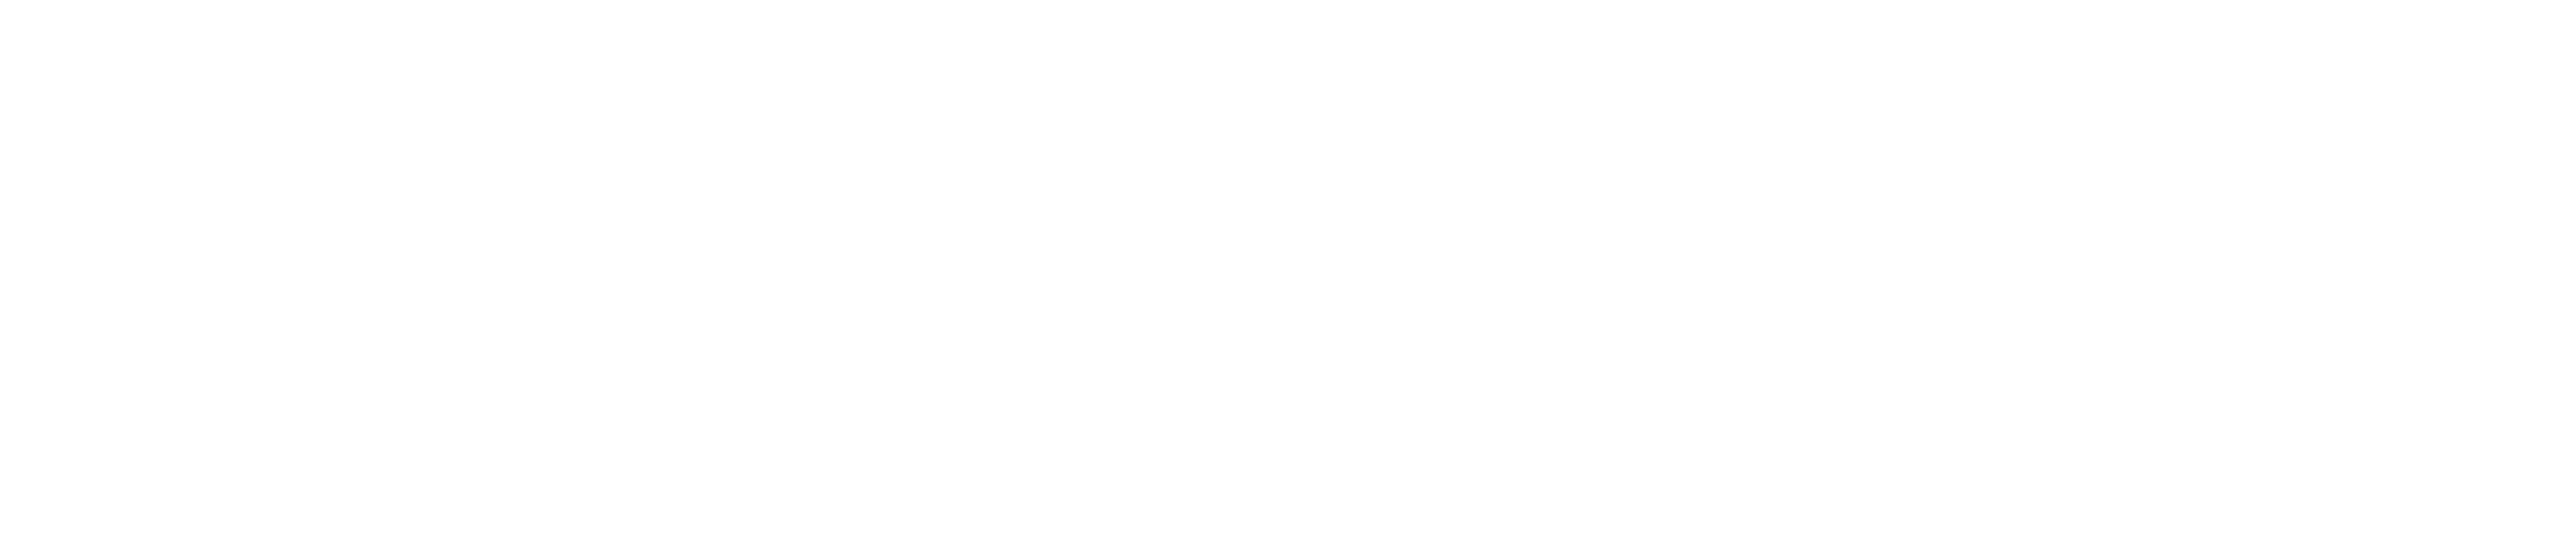 HyBridge_horizontal white-1